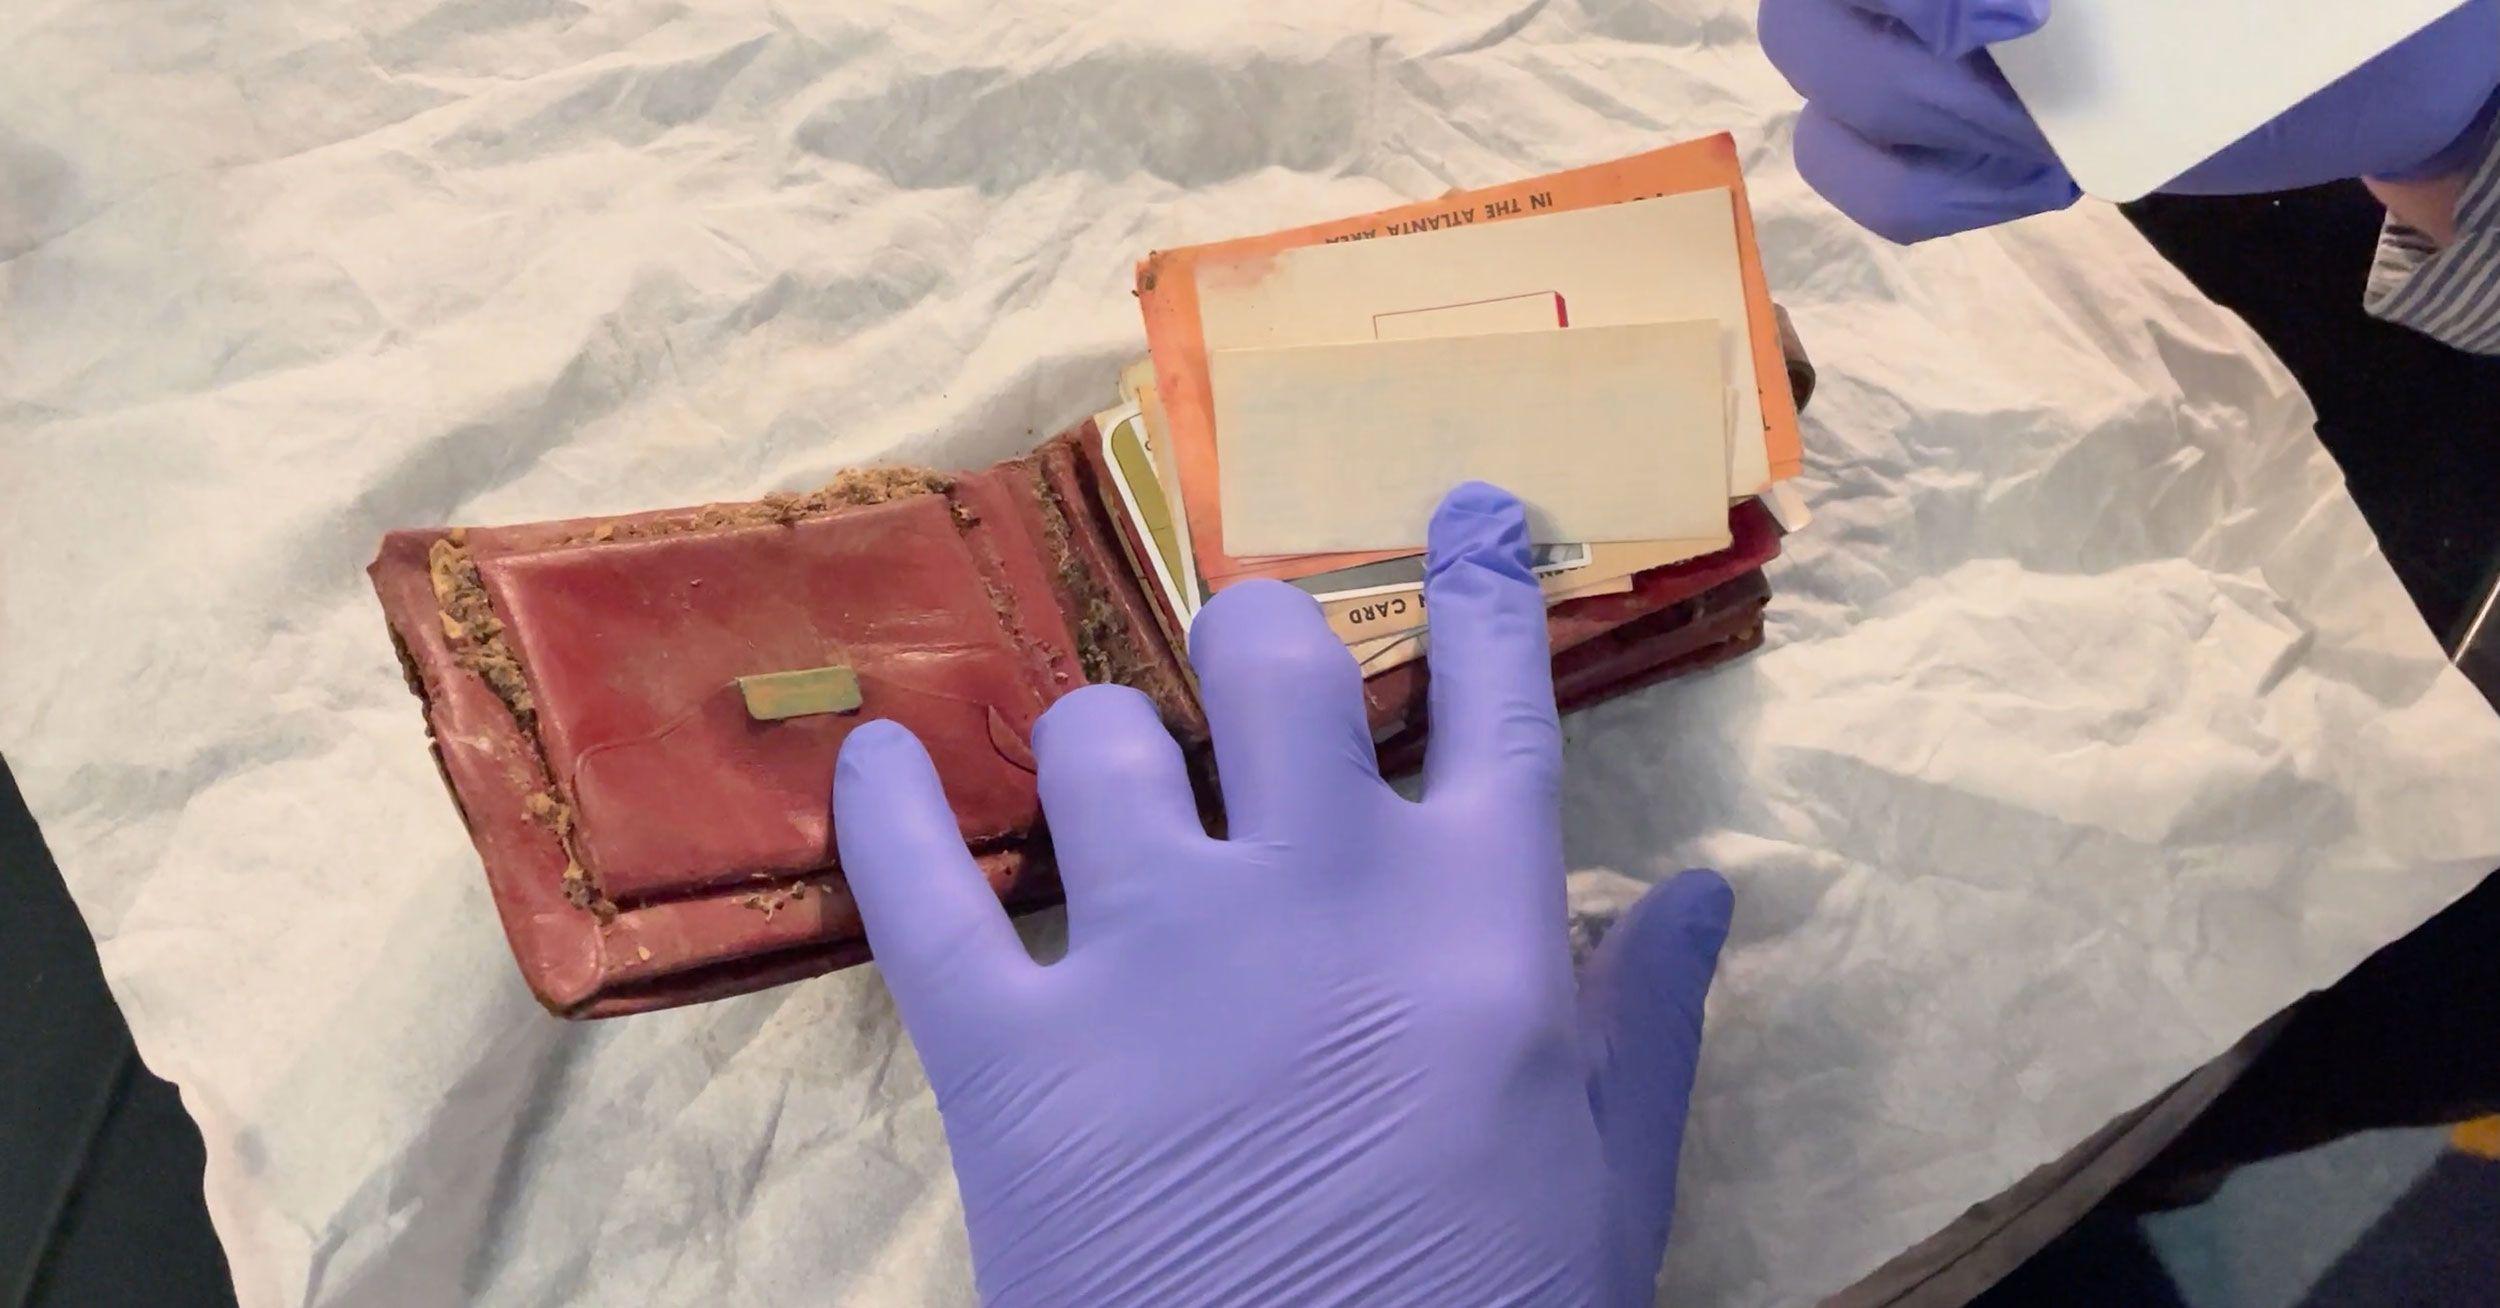 esta família reencontrou a história perdida ao recuperar uma carteira 65 anos depois